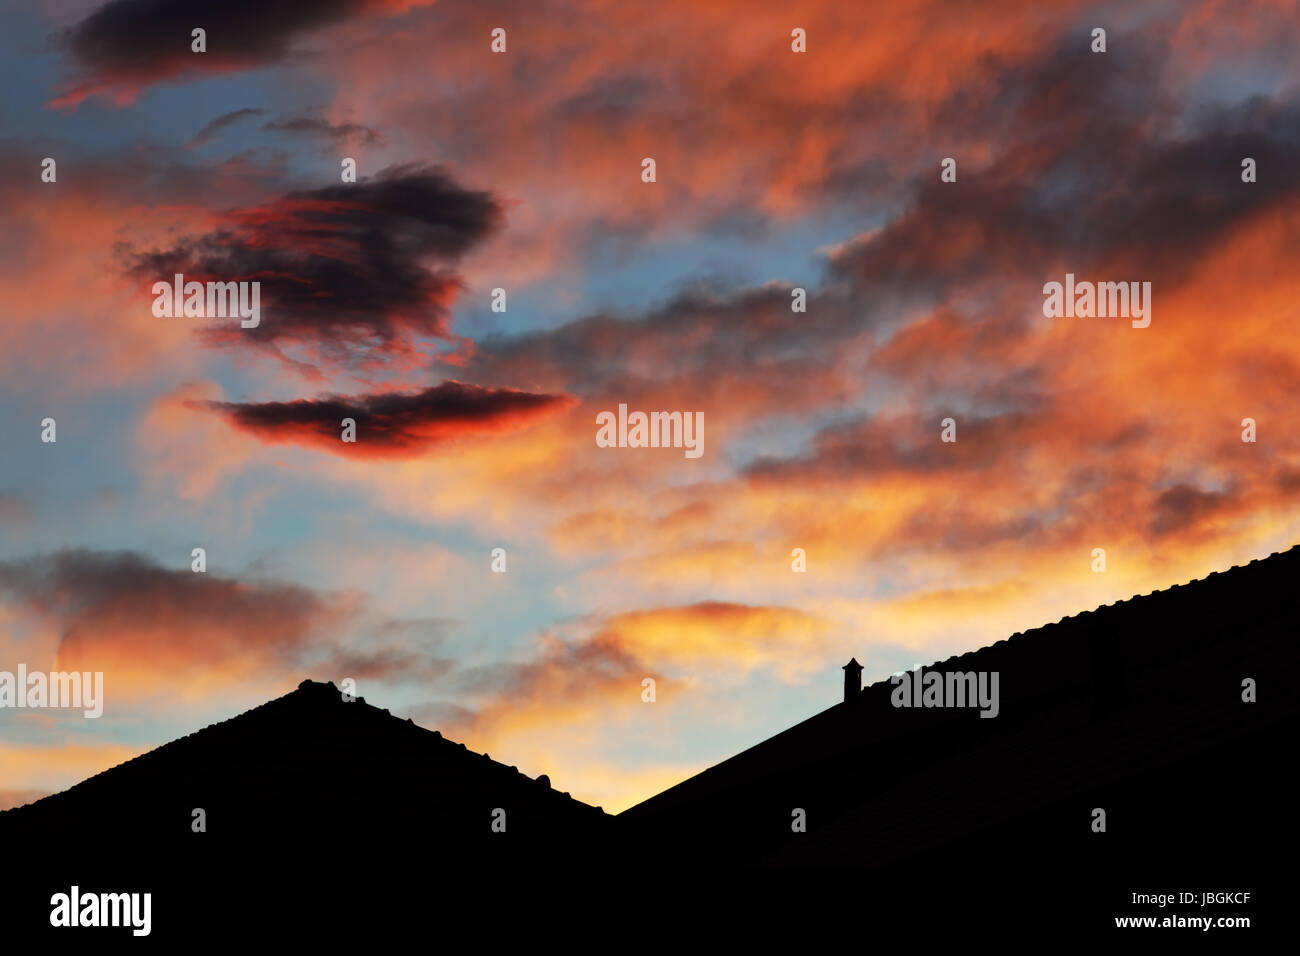 Abendrot in Italien, Dachsilhoutten, blauer Abendhimmel mit roten Wolken Stock Photo